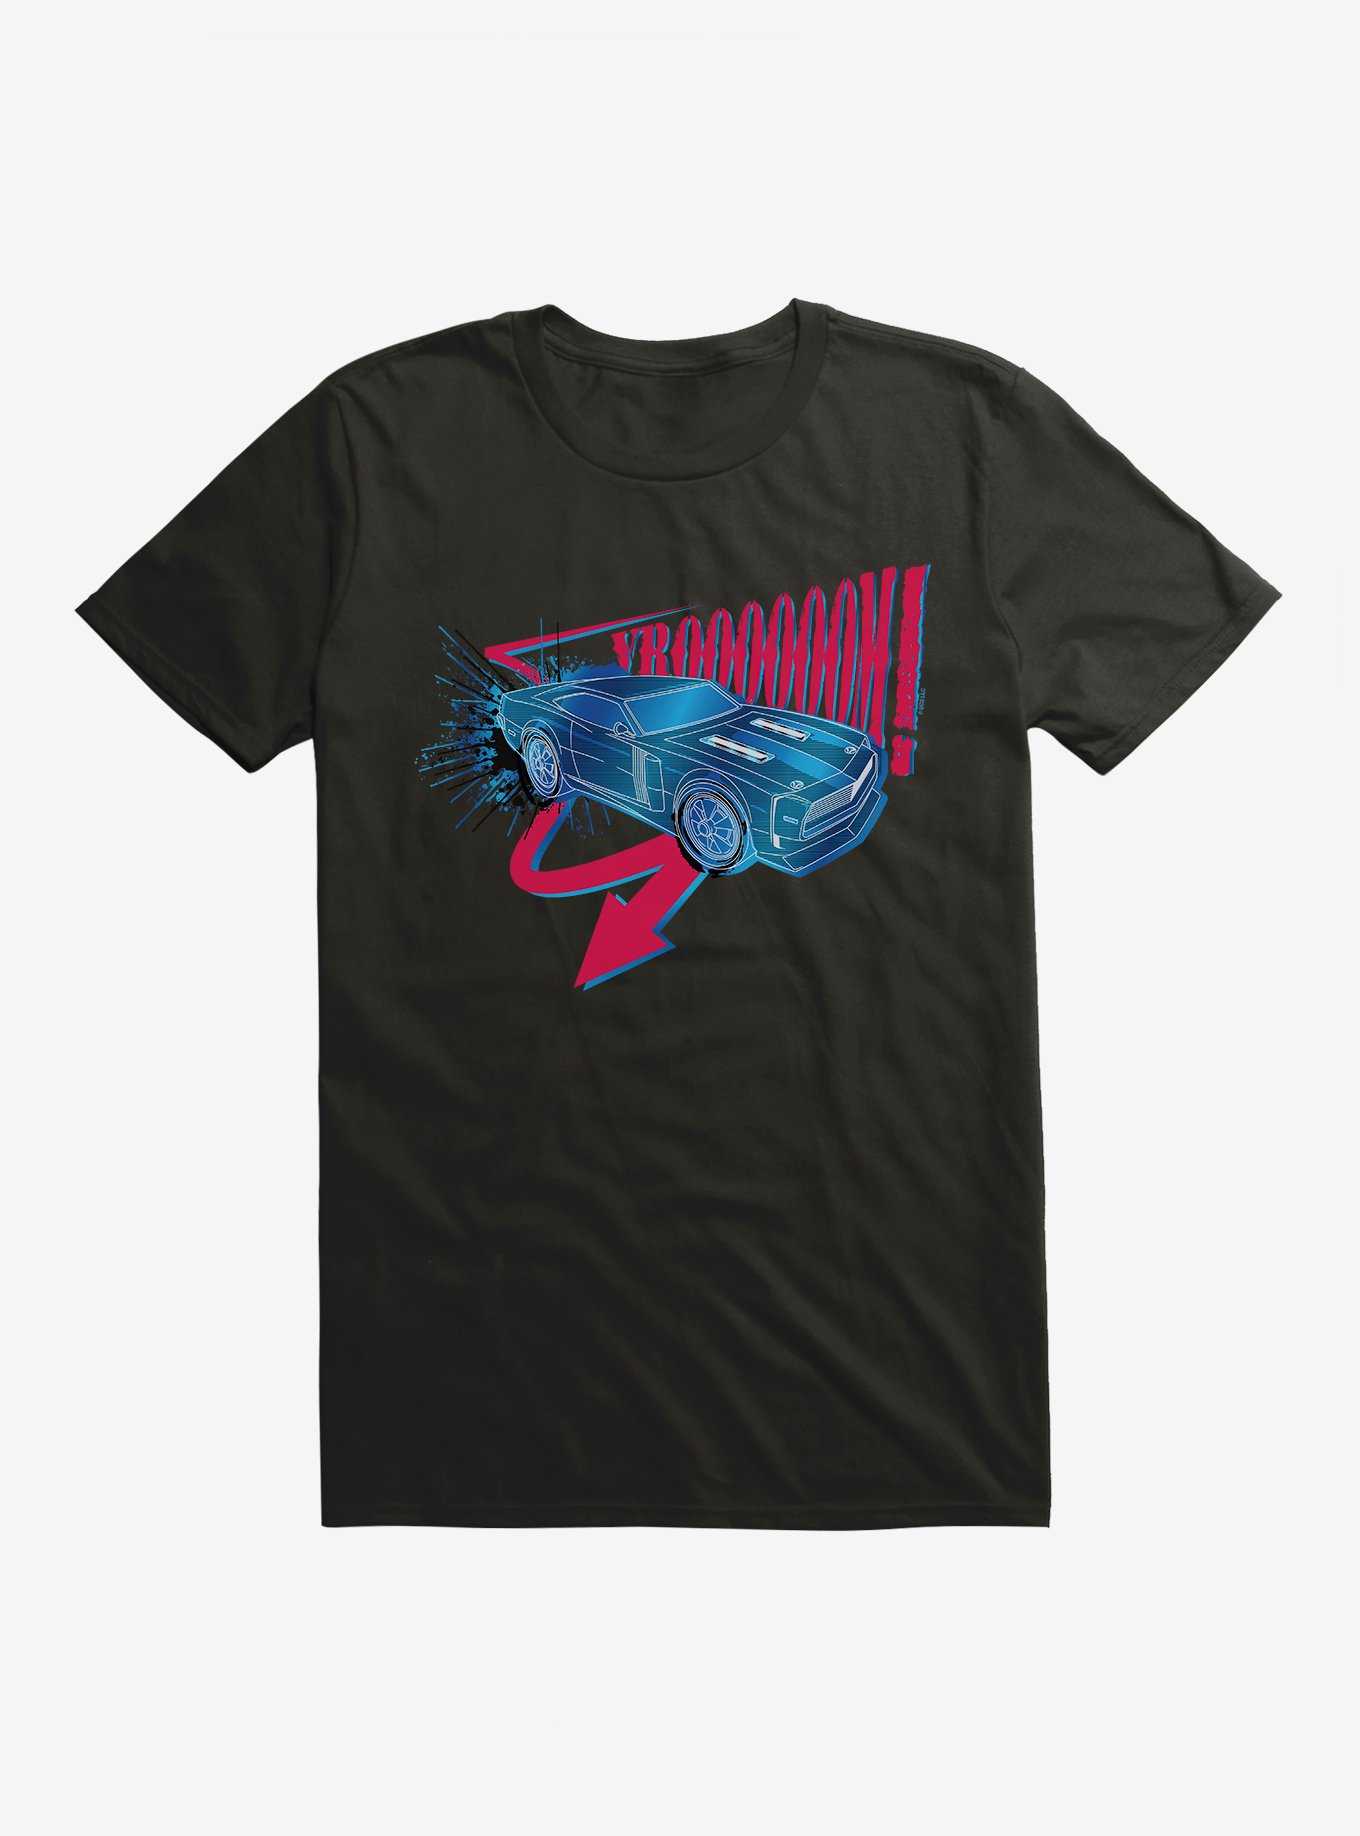 Fast & Furious Vroom! T-Shirt, , hi-res